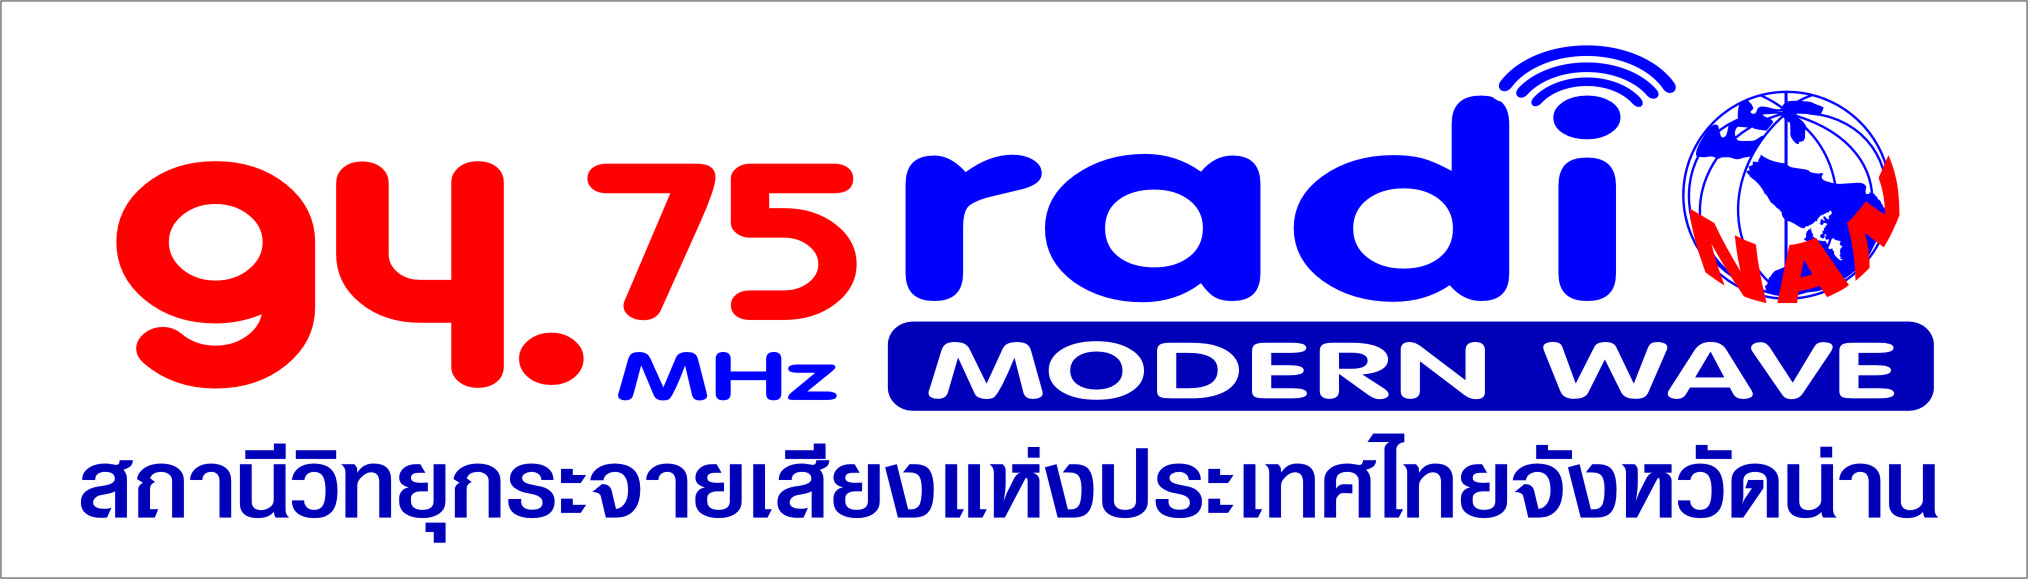 94.75 MHZ Radio Modern Wave